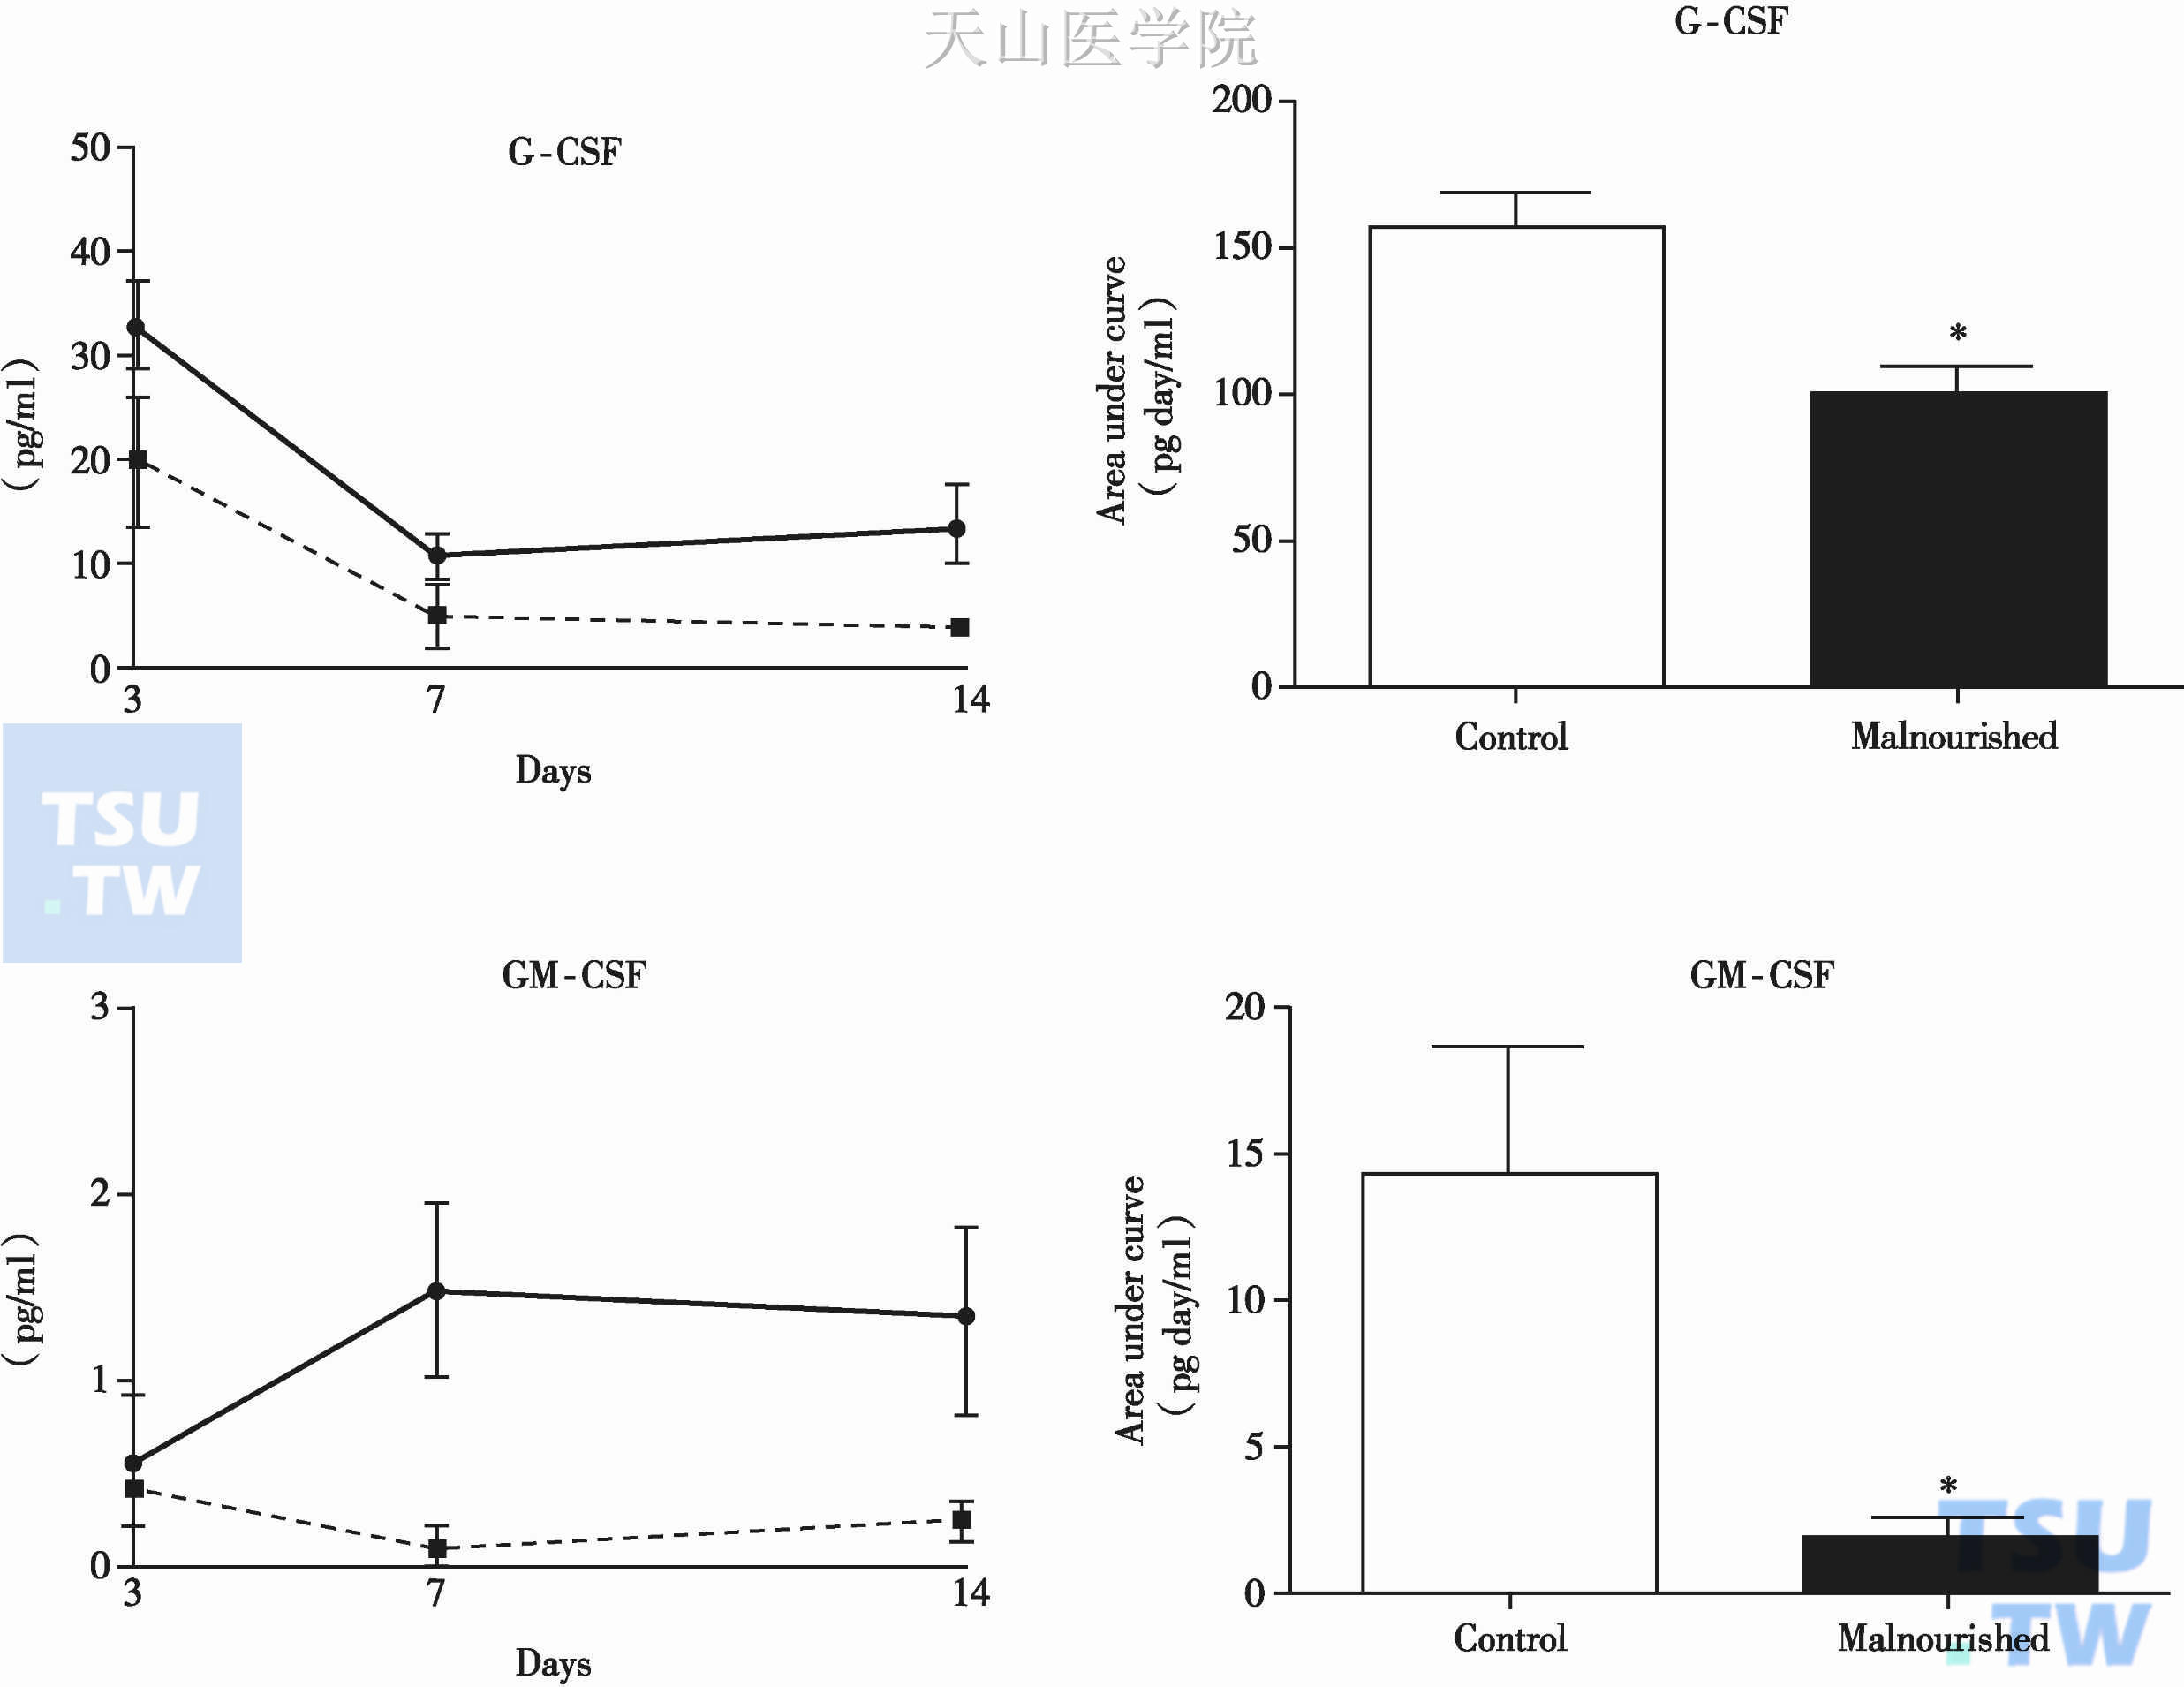 营养不良小鼠的间充质干细胞体外培养产生G-CSF和GM-CSF的能力明显低于正常小鼠